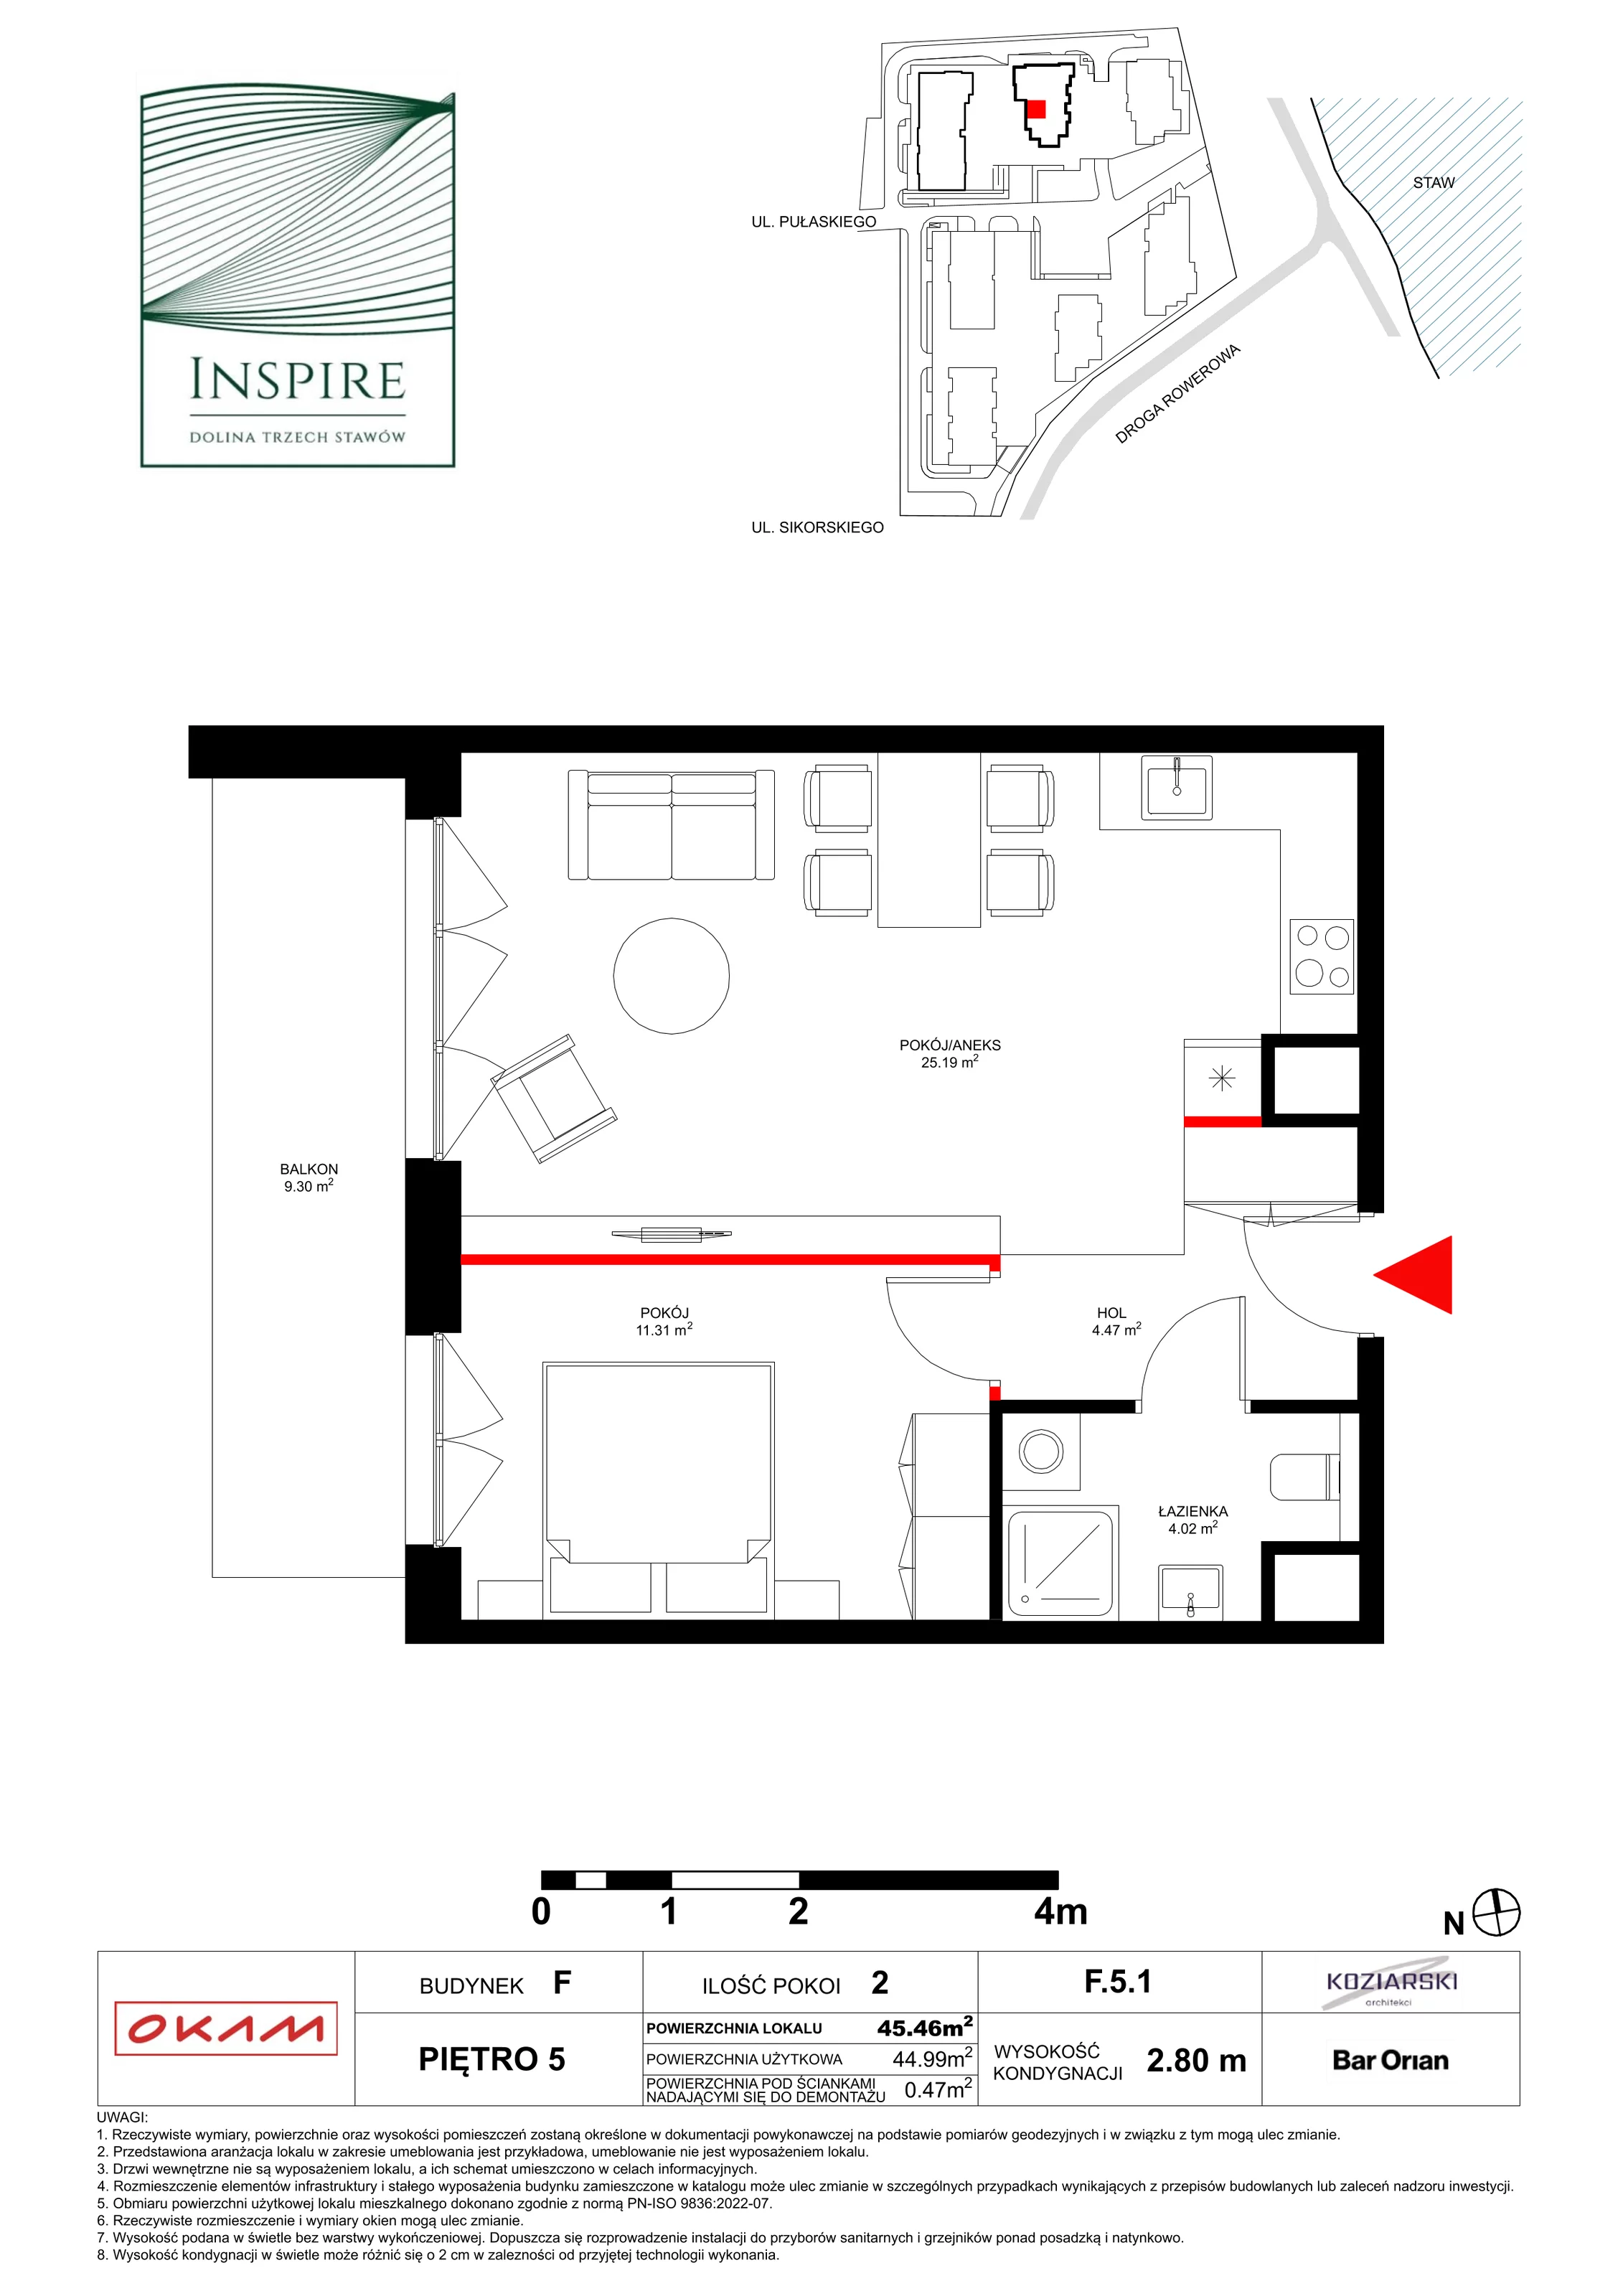 Apartament 44,99 m², piętro 5, oferta nr F.5.1, Inspire, Katowice, Osiedle Paderewskiego-Muchowiec, Dolina Trzech Stawów, ul. gen. Sikorskiego 41